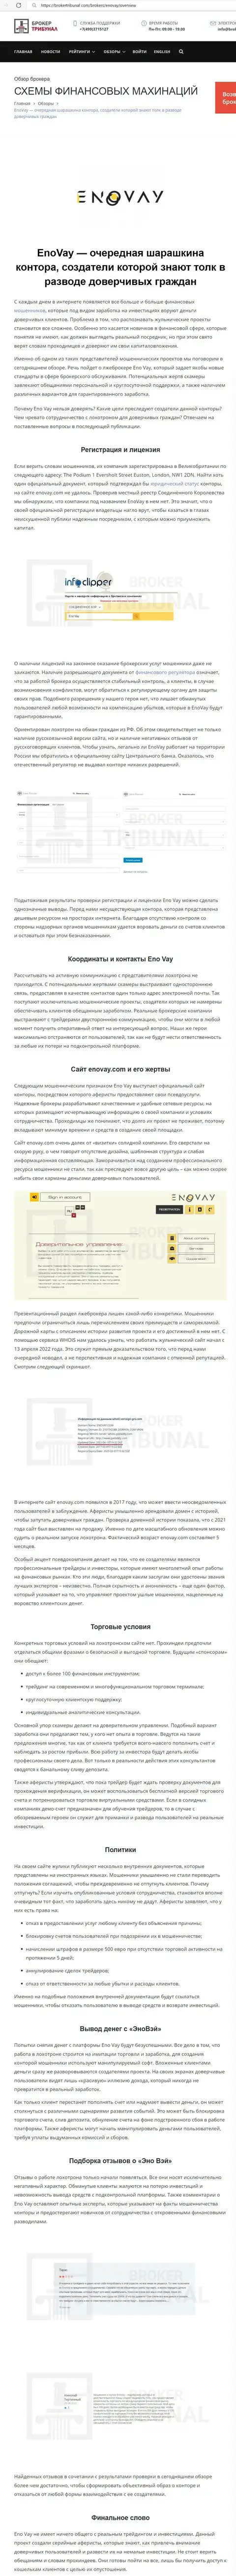 ВЗАИМОДЕЙСТВОВАТЬ НЕ СОВЕТУЕМ - публикация с обзором EnoVay Com